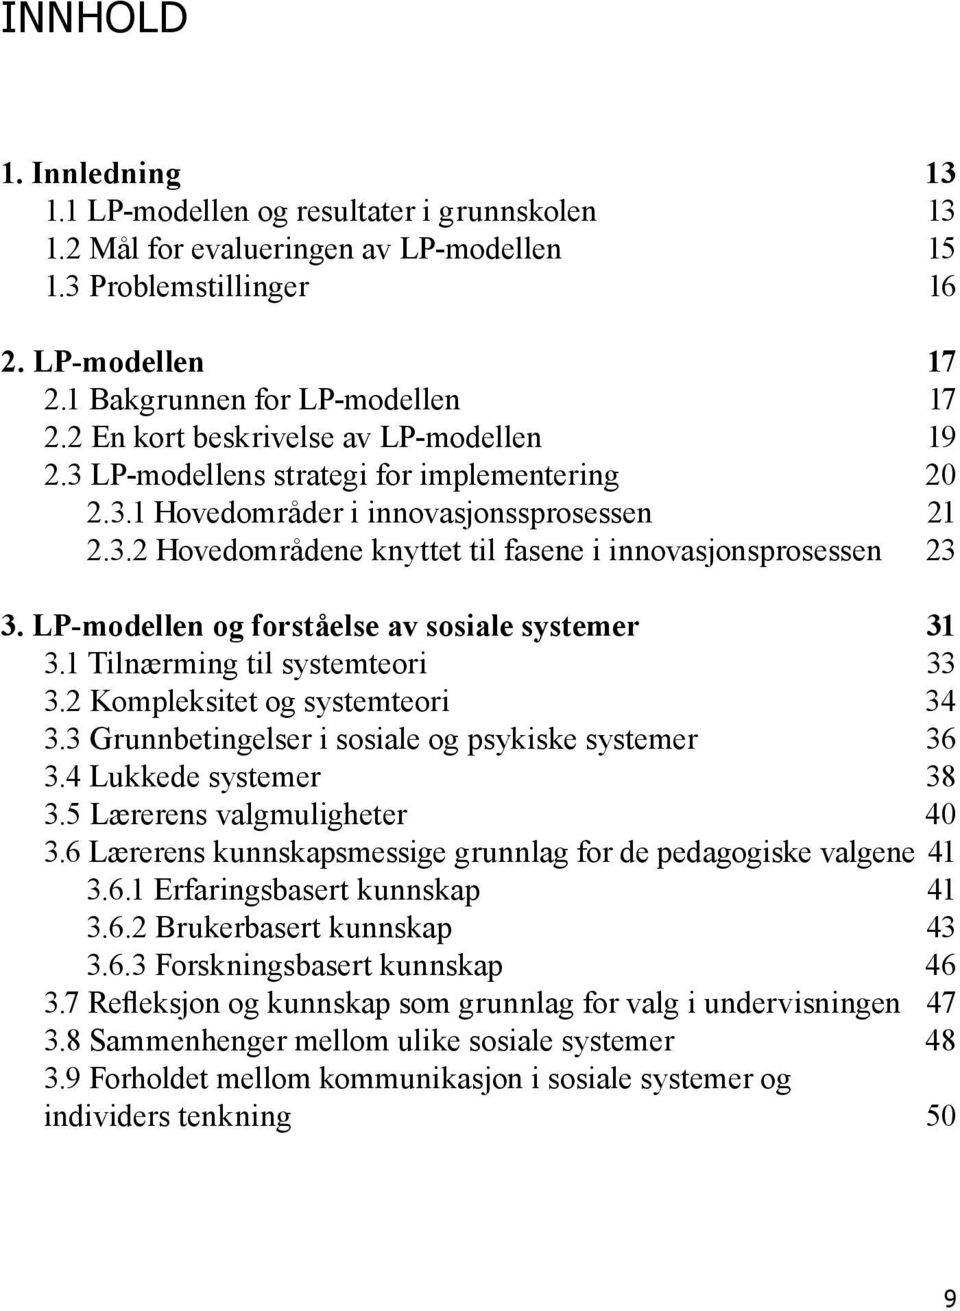 LP-modellen og forståelse av sosiale systemer 31 3.1 Tilnærming til systemteori 33 3.2 Kompleksitet og systemteori 34 3.3 Grunnbetingelser i sosiale og psykiske systemer 36 3.4 Lukkede systemer 38 3.